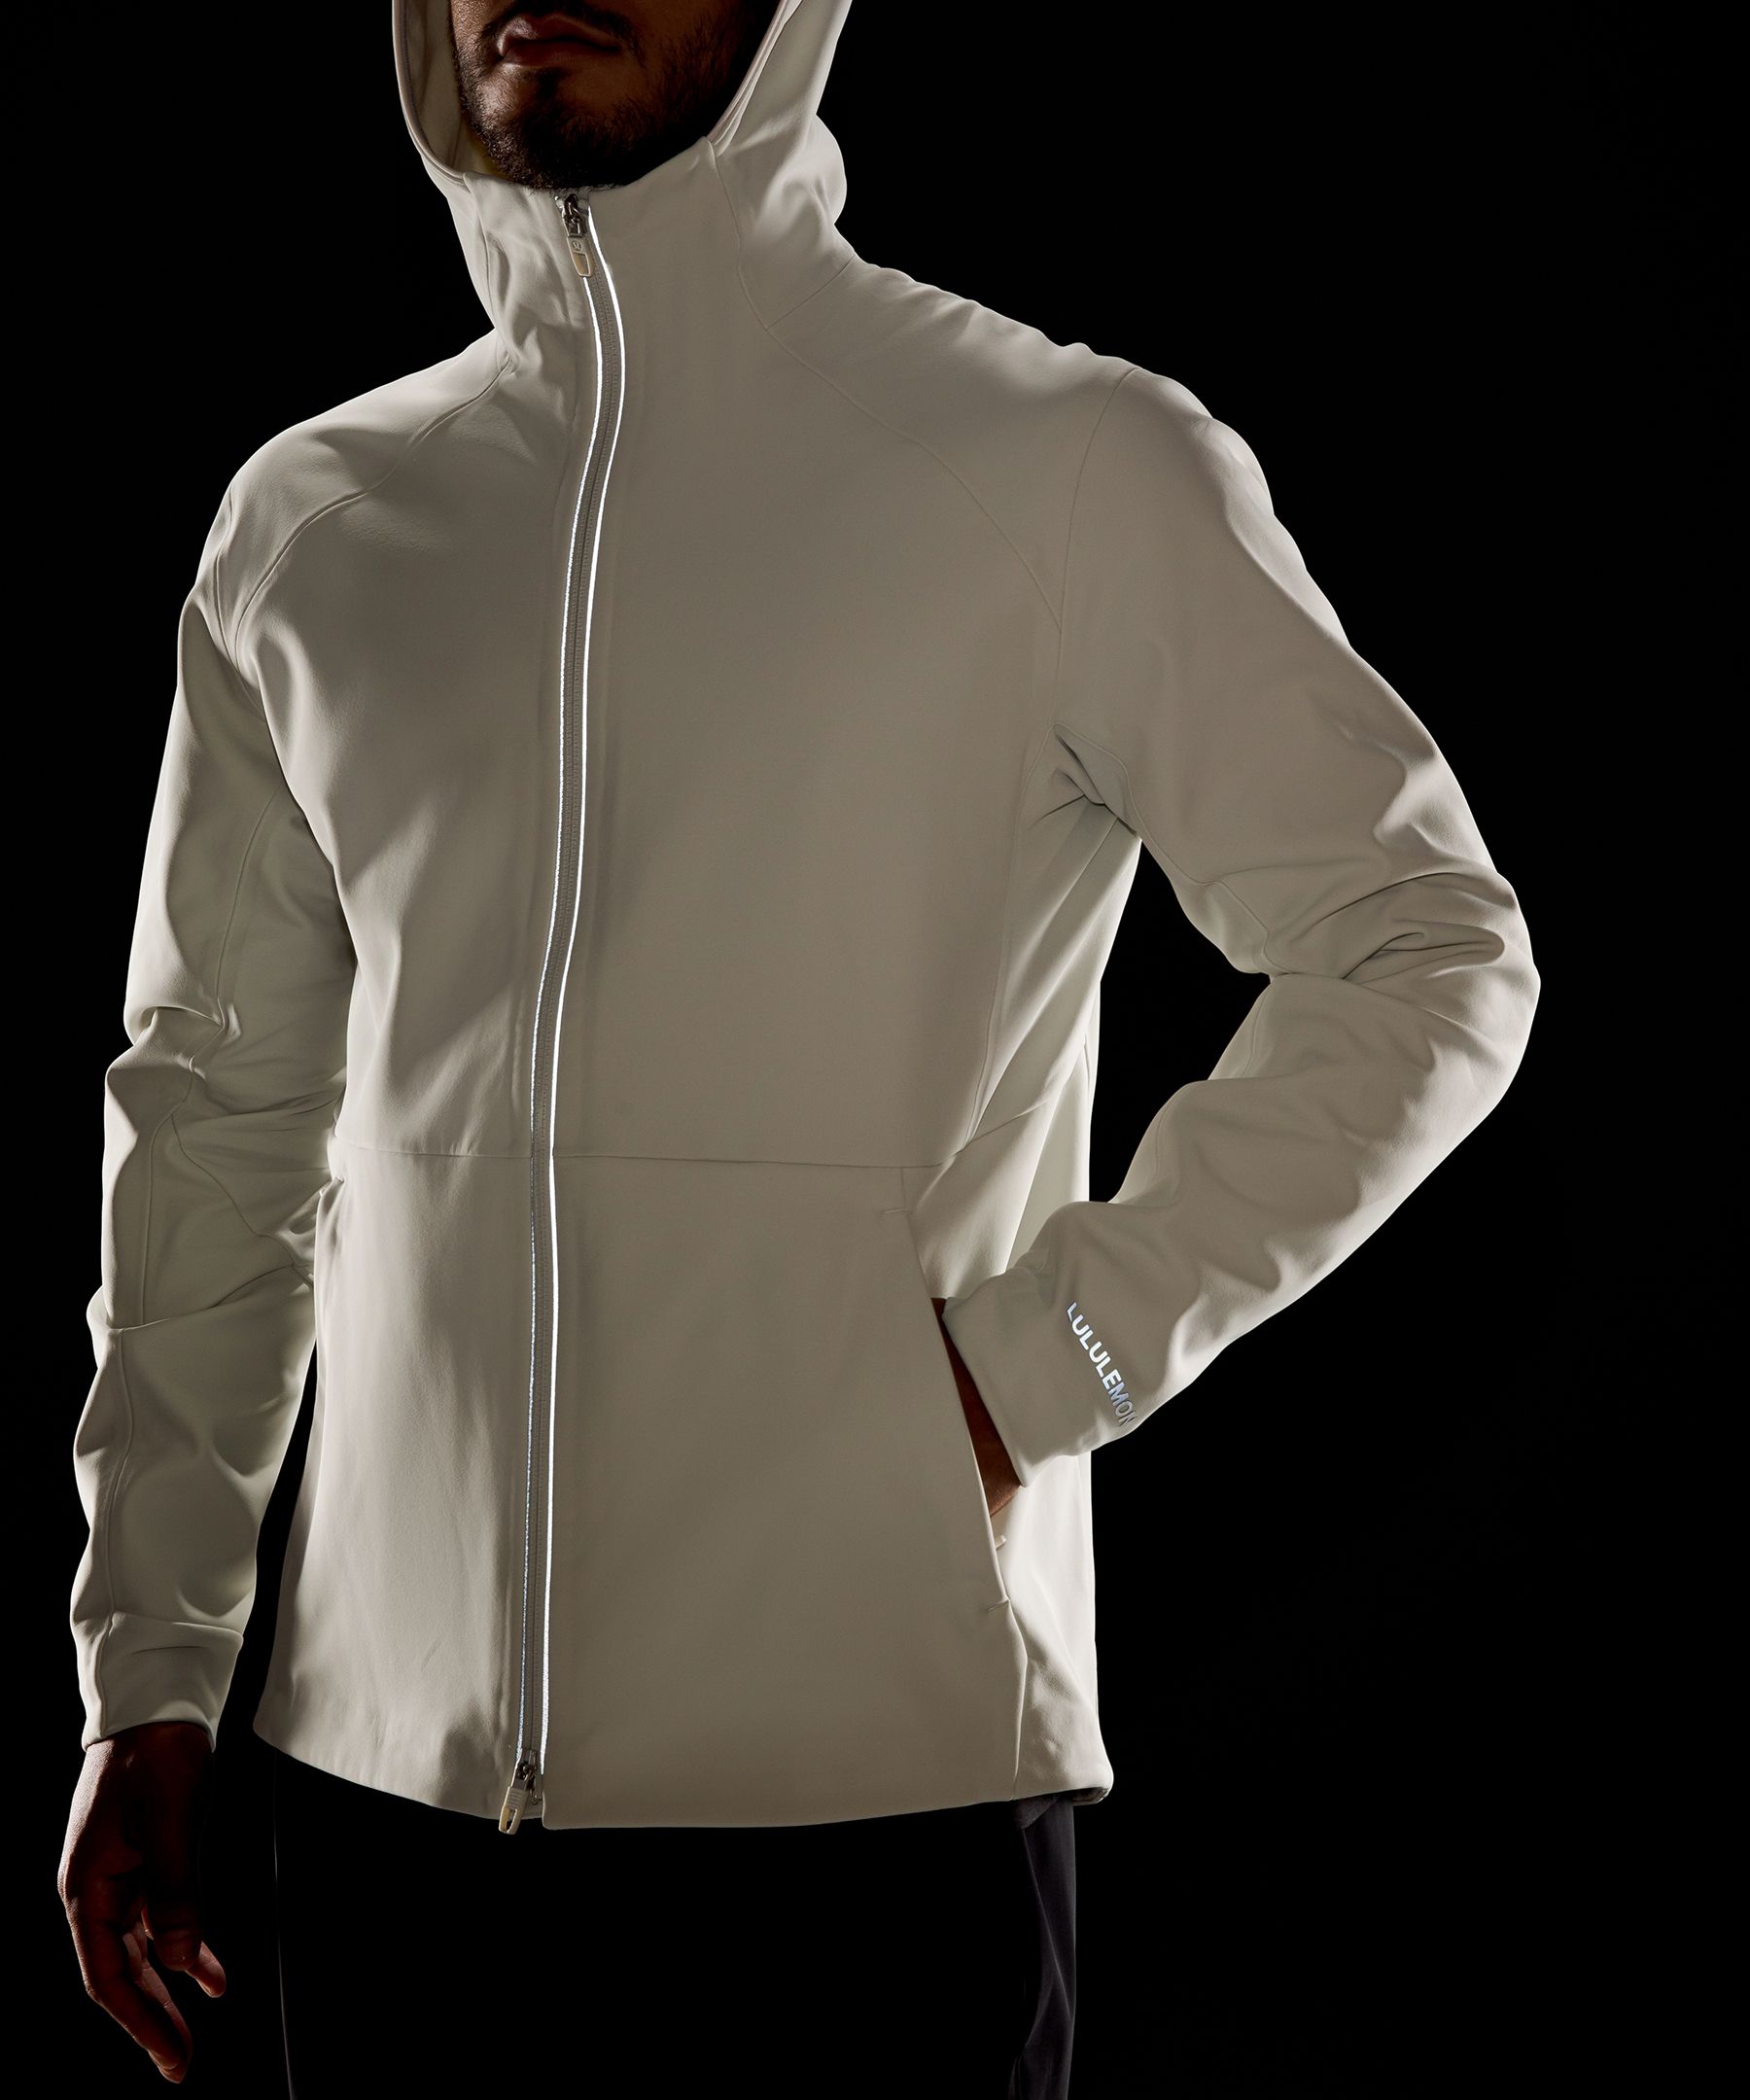 LULULEMON Cross Chill Slim-Fit RepelShell™ Hooded Jacket for Men